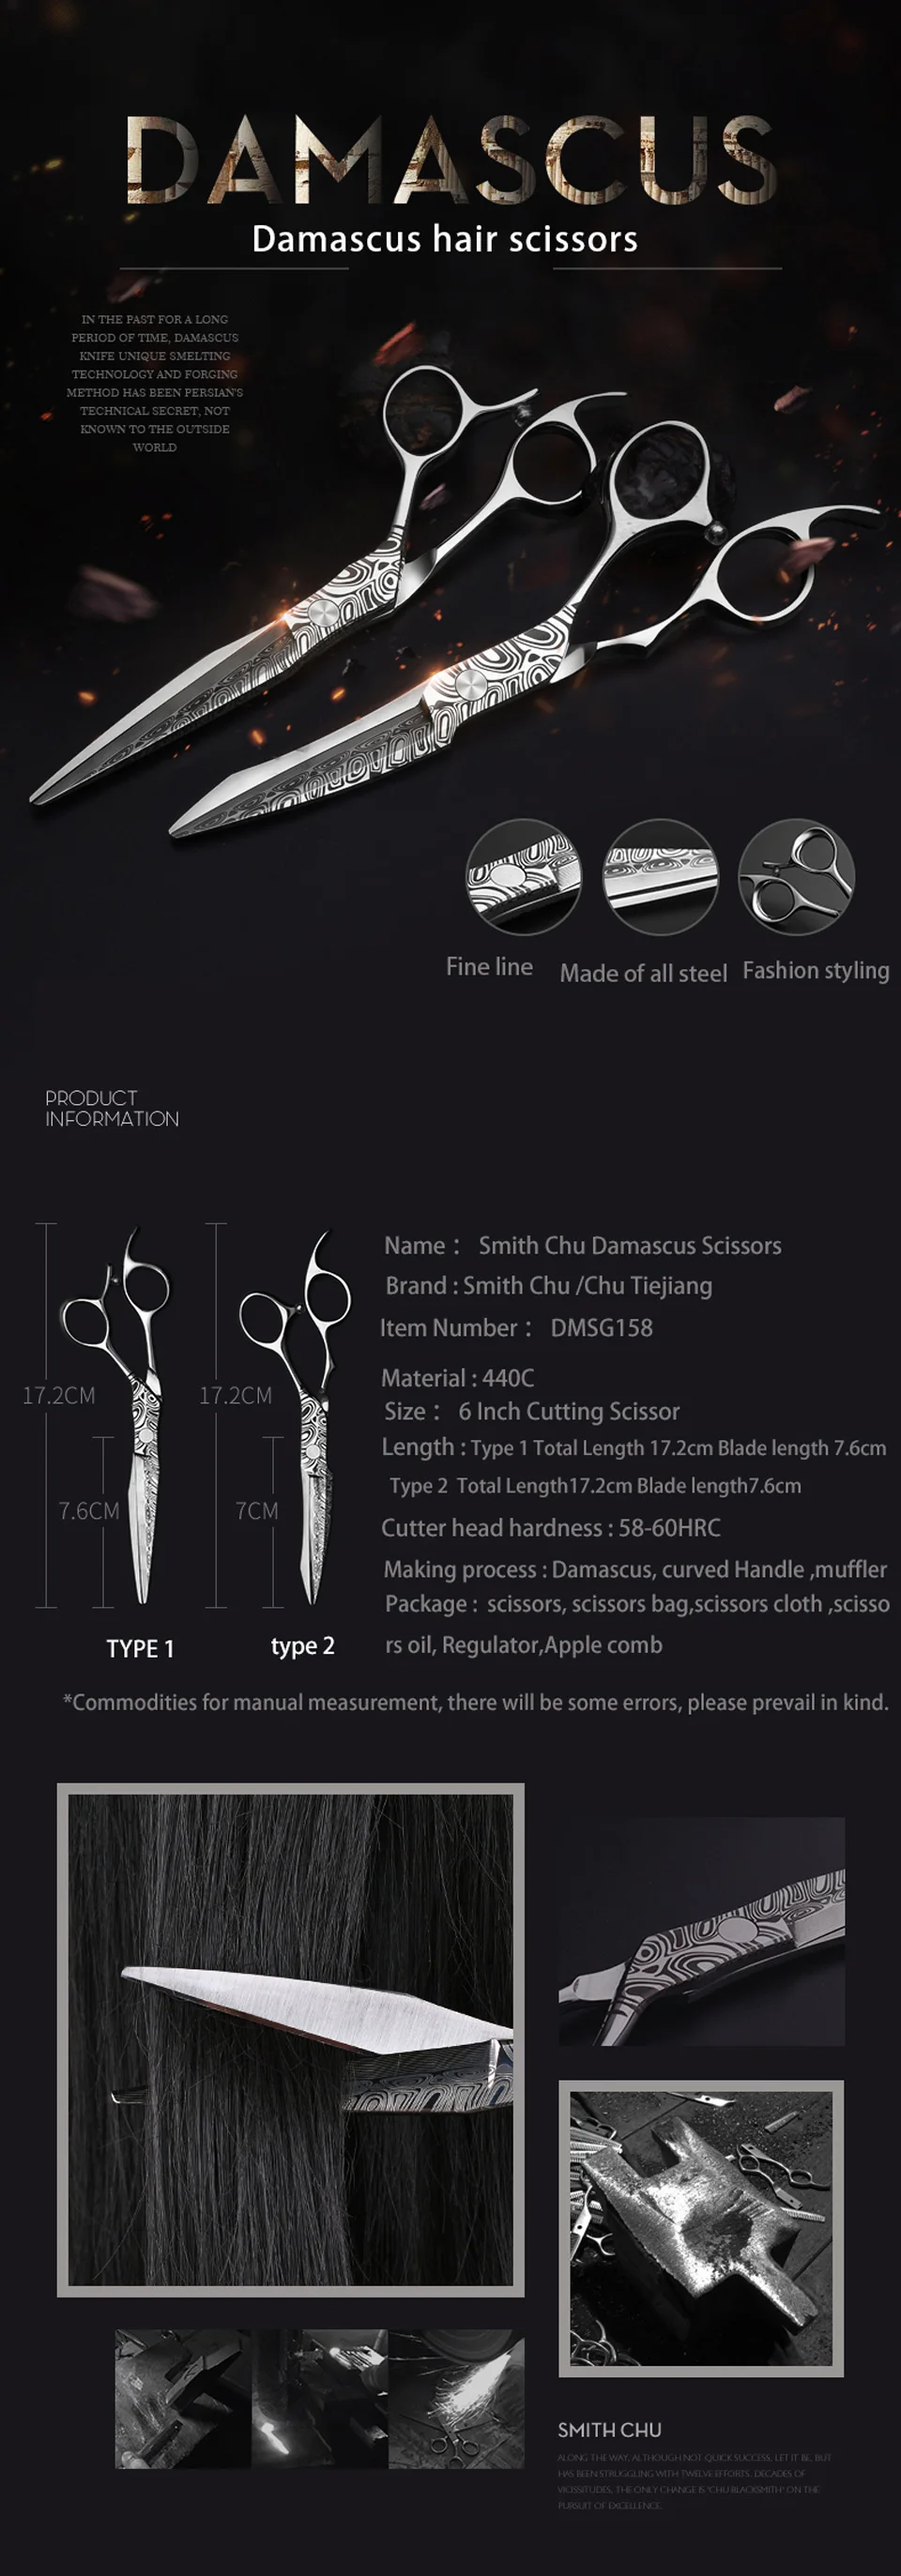 Smith Chu 6 дюймов Damacus Парикмахерские ножницы 440C из нержавеющей стали Профессиональные Парикмахерские ножницы для стрижки волос набор